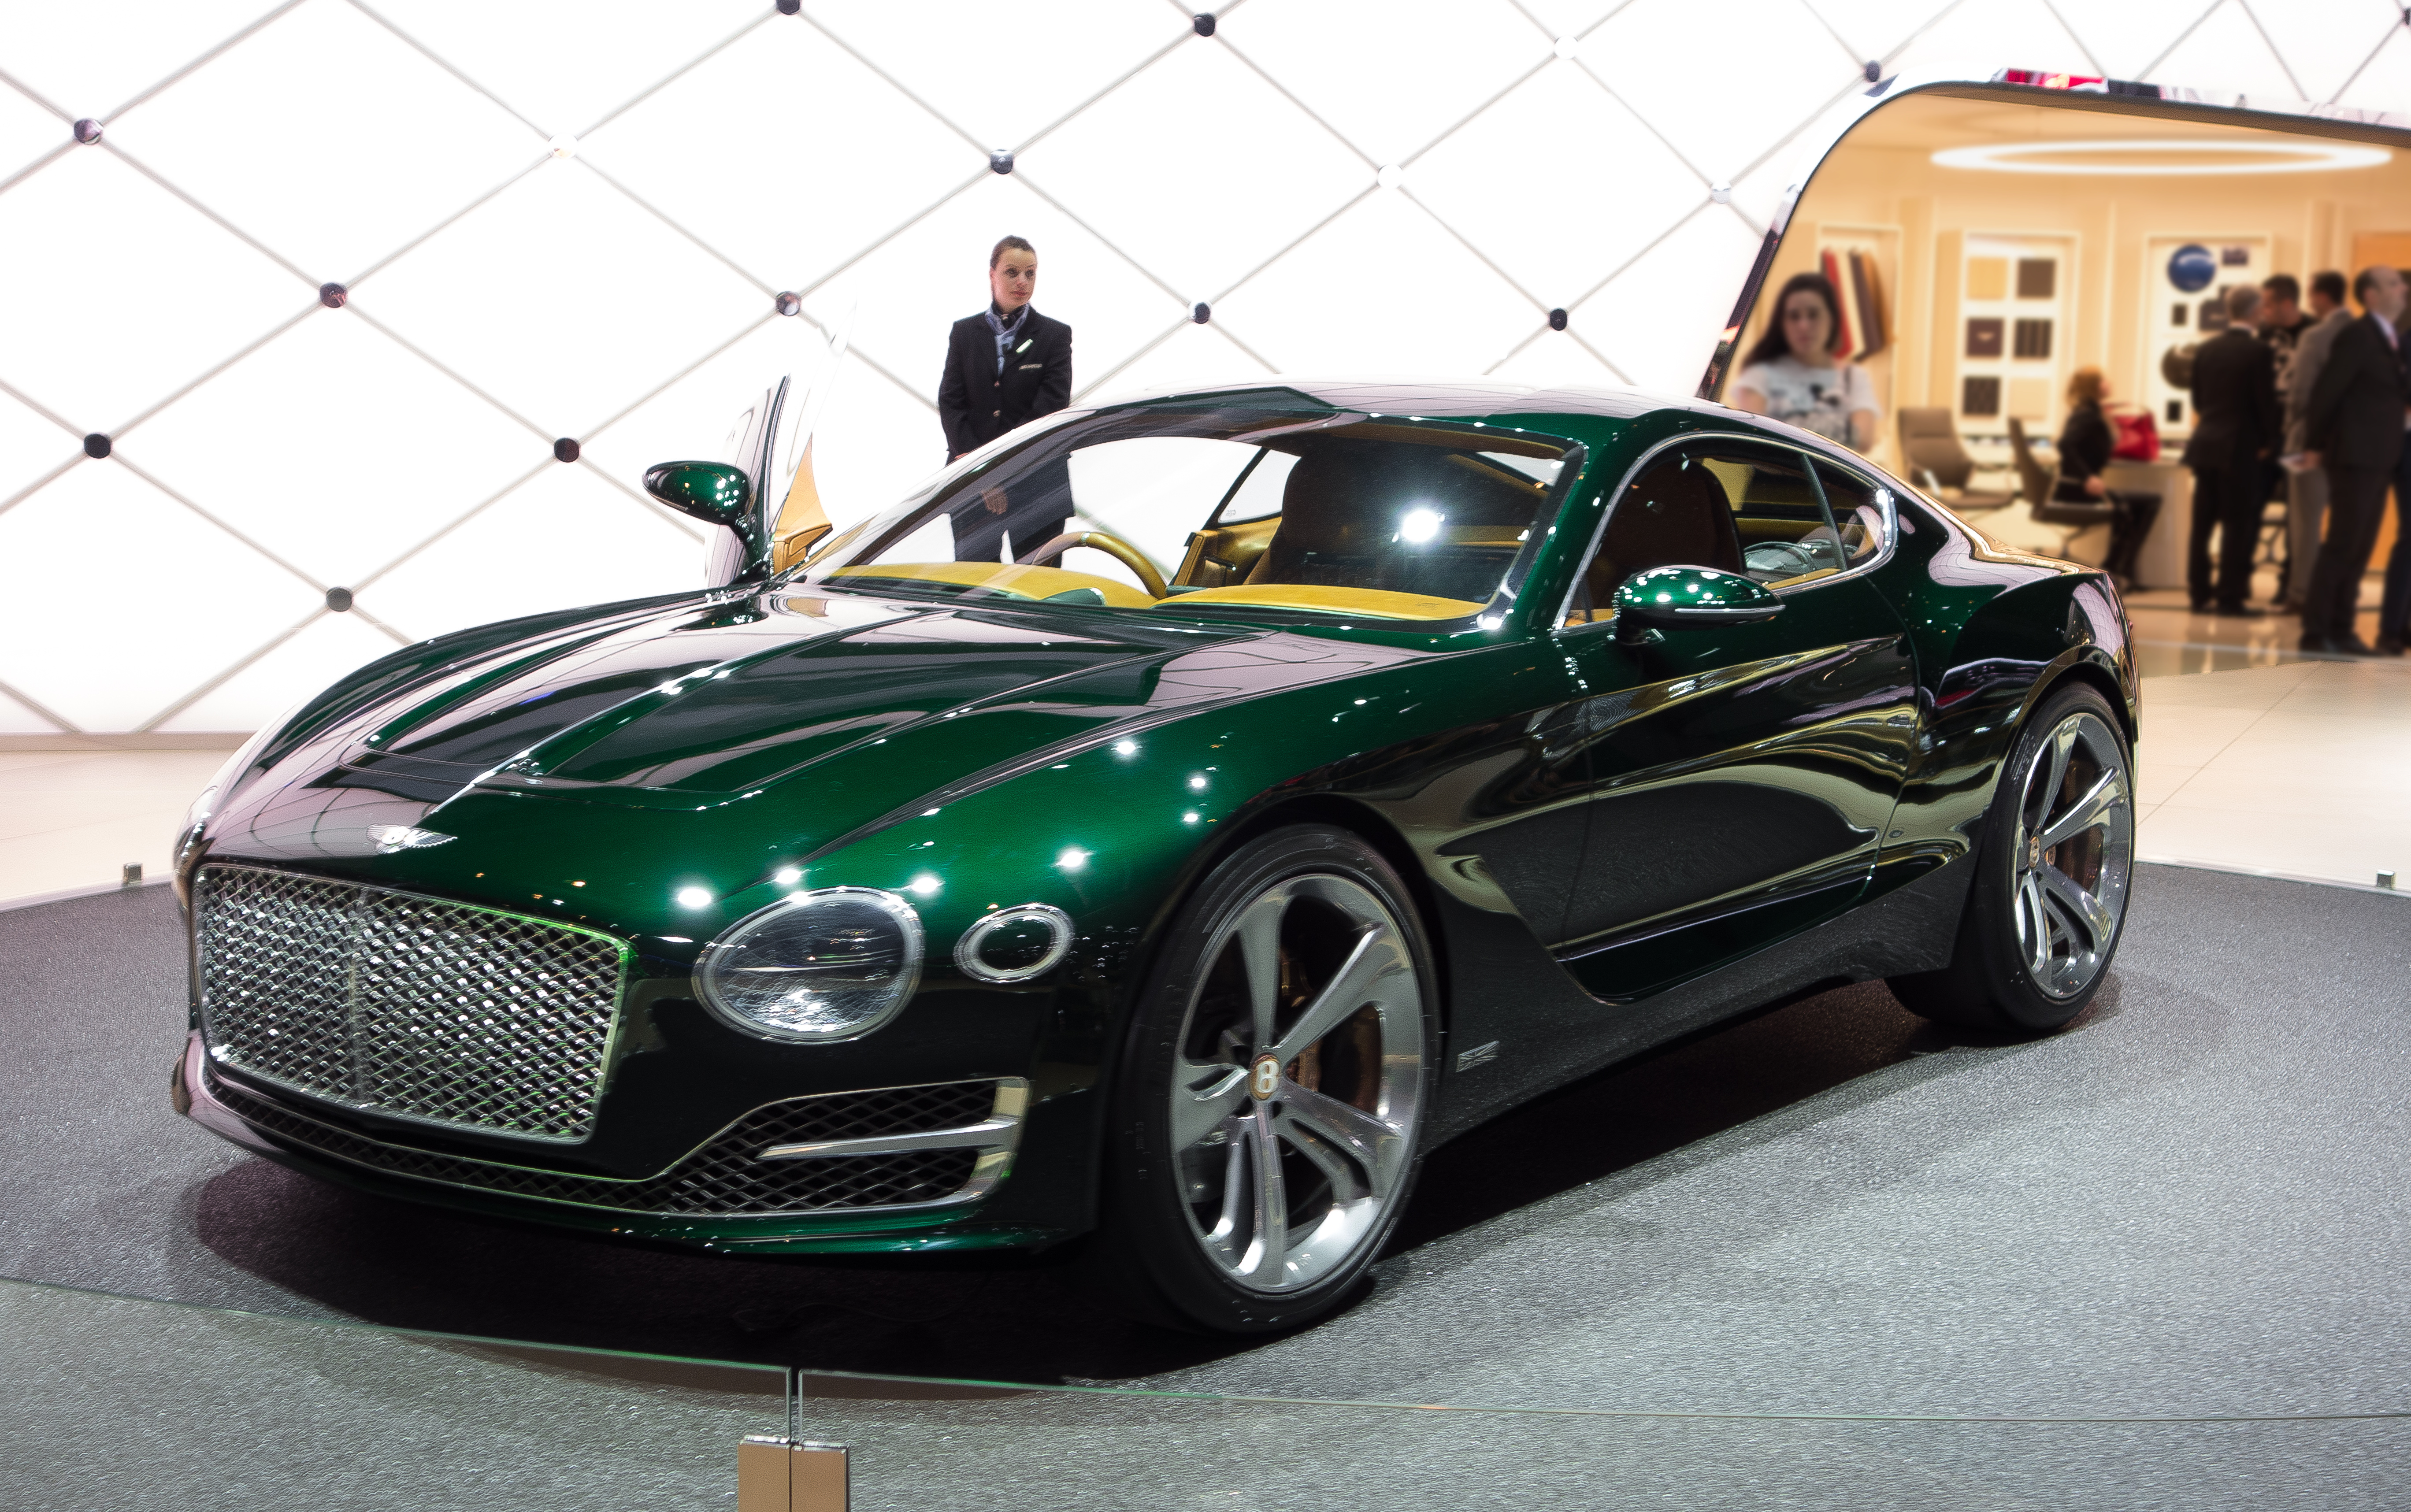 Bentley Exp 10 Speed 6 Wikipedia